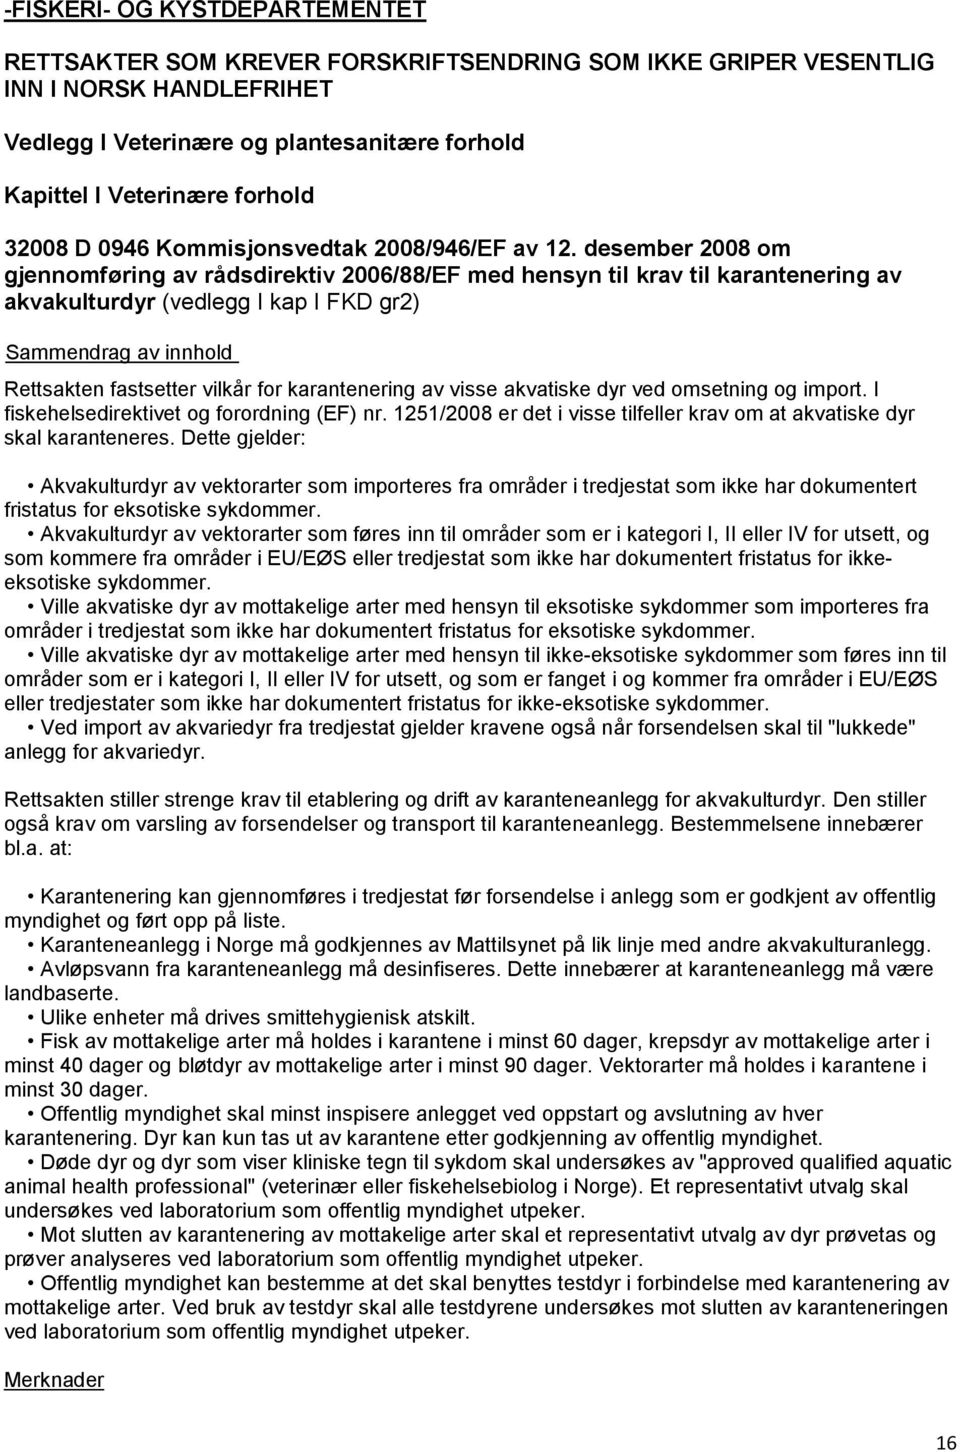 desember 2008 om gjennomføring av rådsdirektiv 2006/88/EF med hensyn til krav til karantenering av akvakulturdyr (vedlegg I kap I FKD gr2) Rettsakten fastsetter vilkår for karantenering av visse